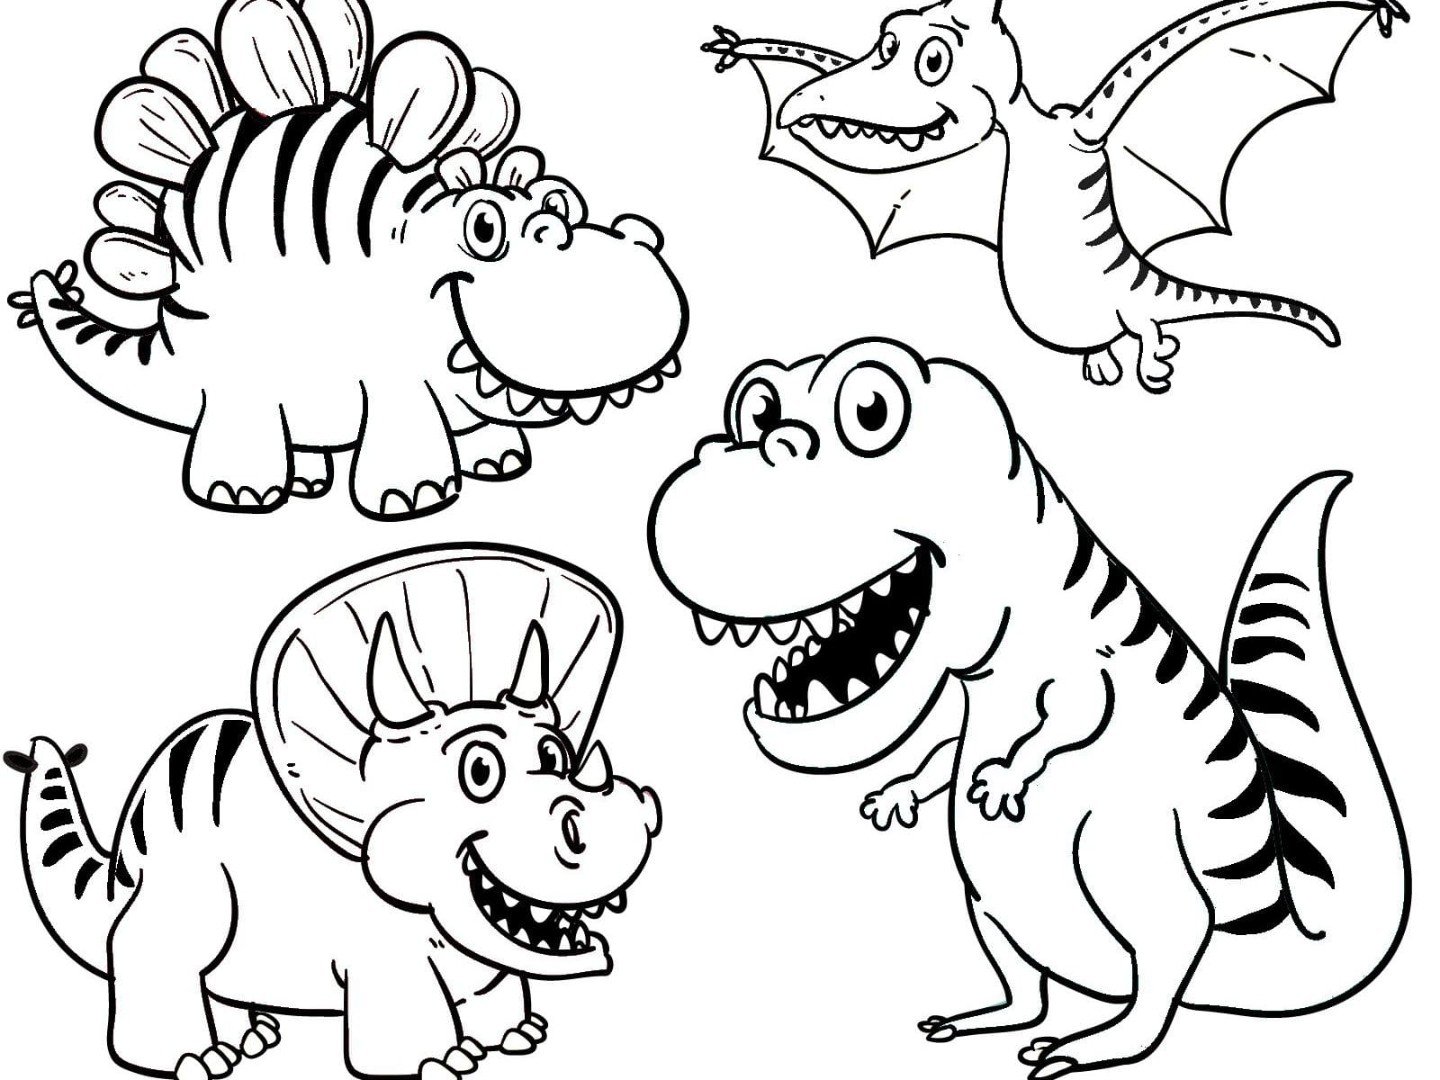 Dinosaurios que vuelan para dibujar